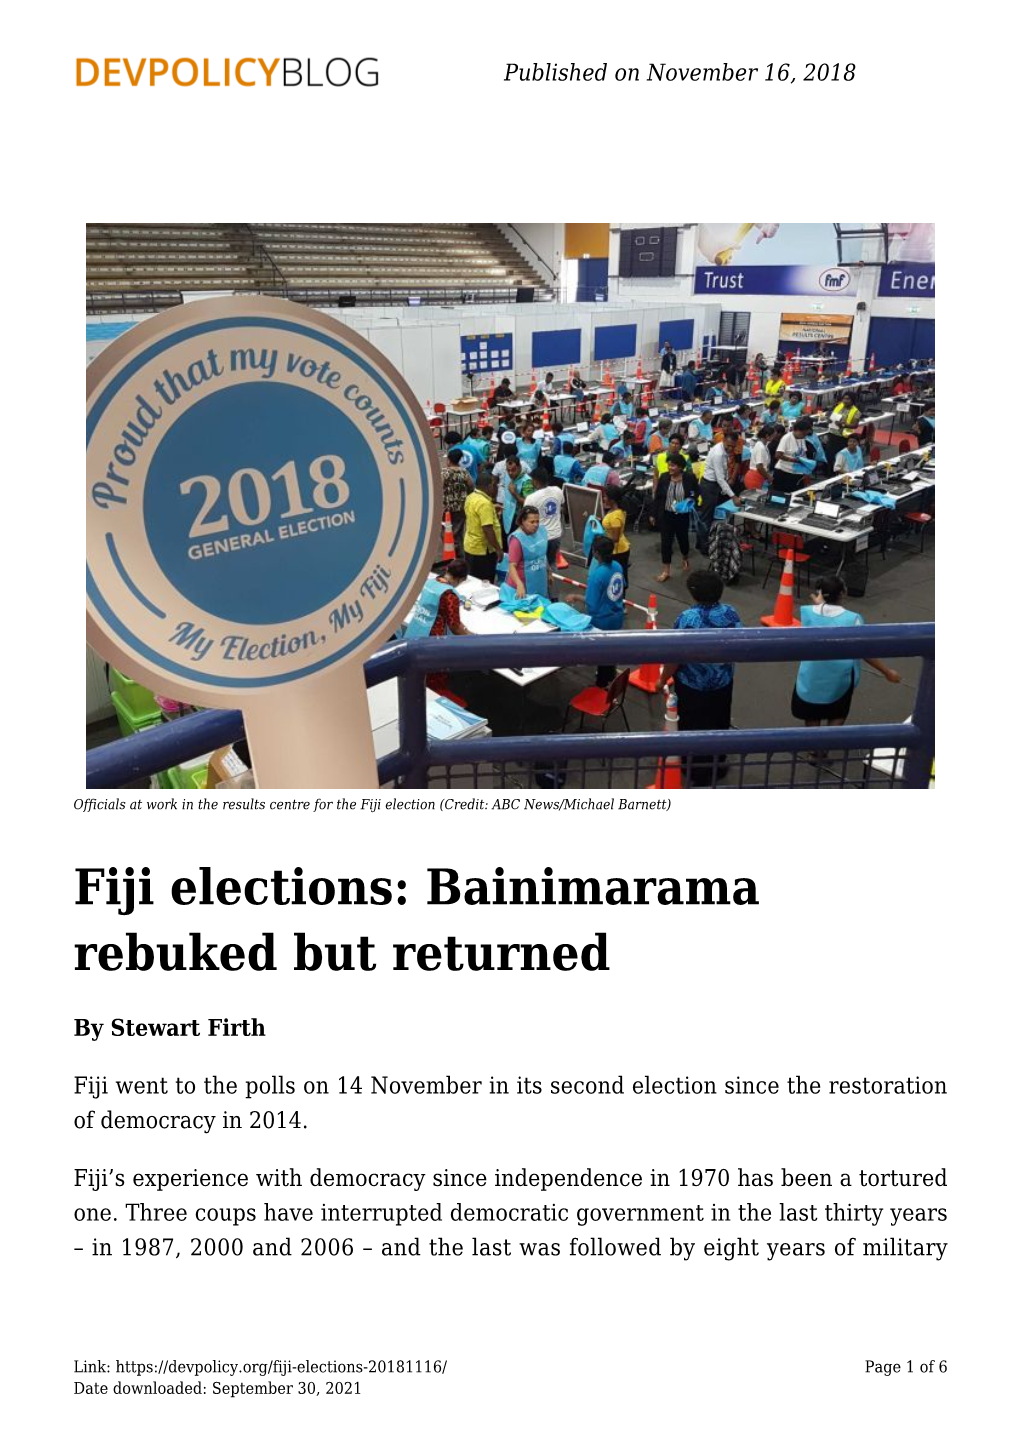 Fiji Elections: Bainimarama Rebuked but Returned